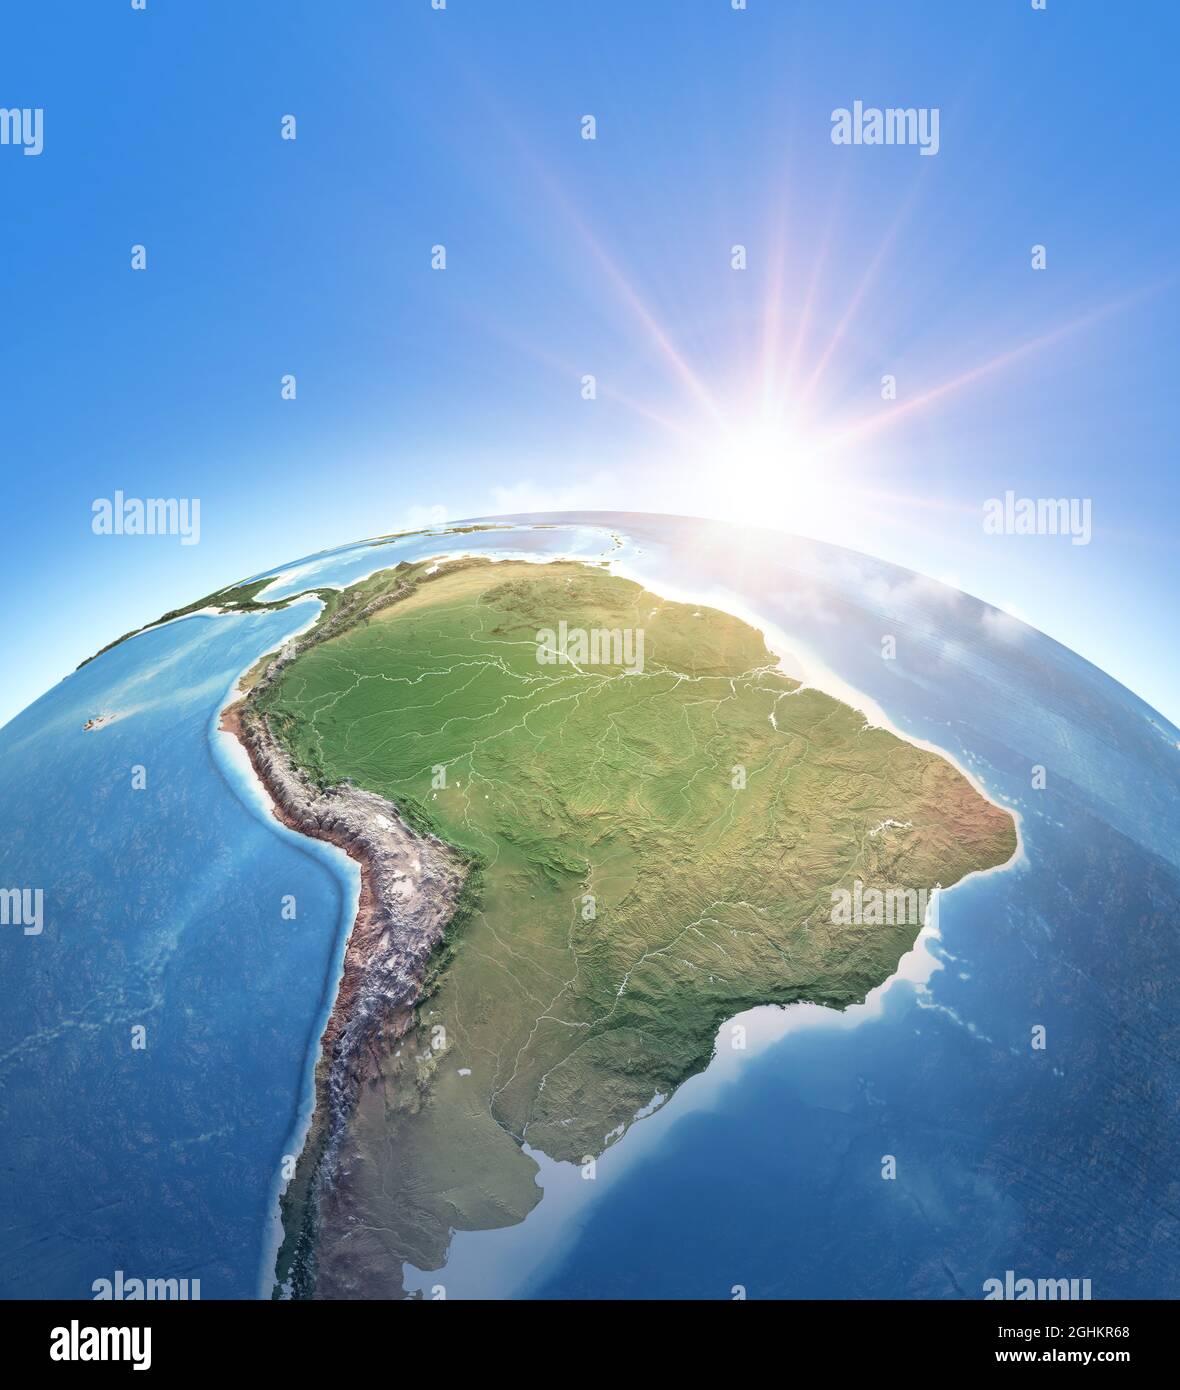 Sole che brilla sul pianeta Terra. Mappa fisica del Sud America; Brasile e Amazzonia foresta pluviale, Andes Cordillera. Elementi di questa immagine forniti dalla NASA Foto Stock